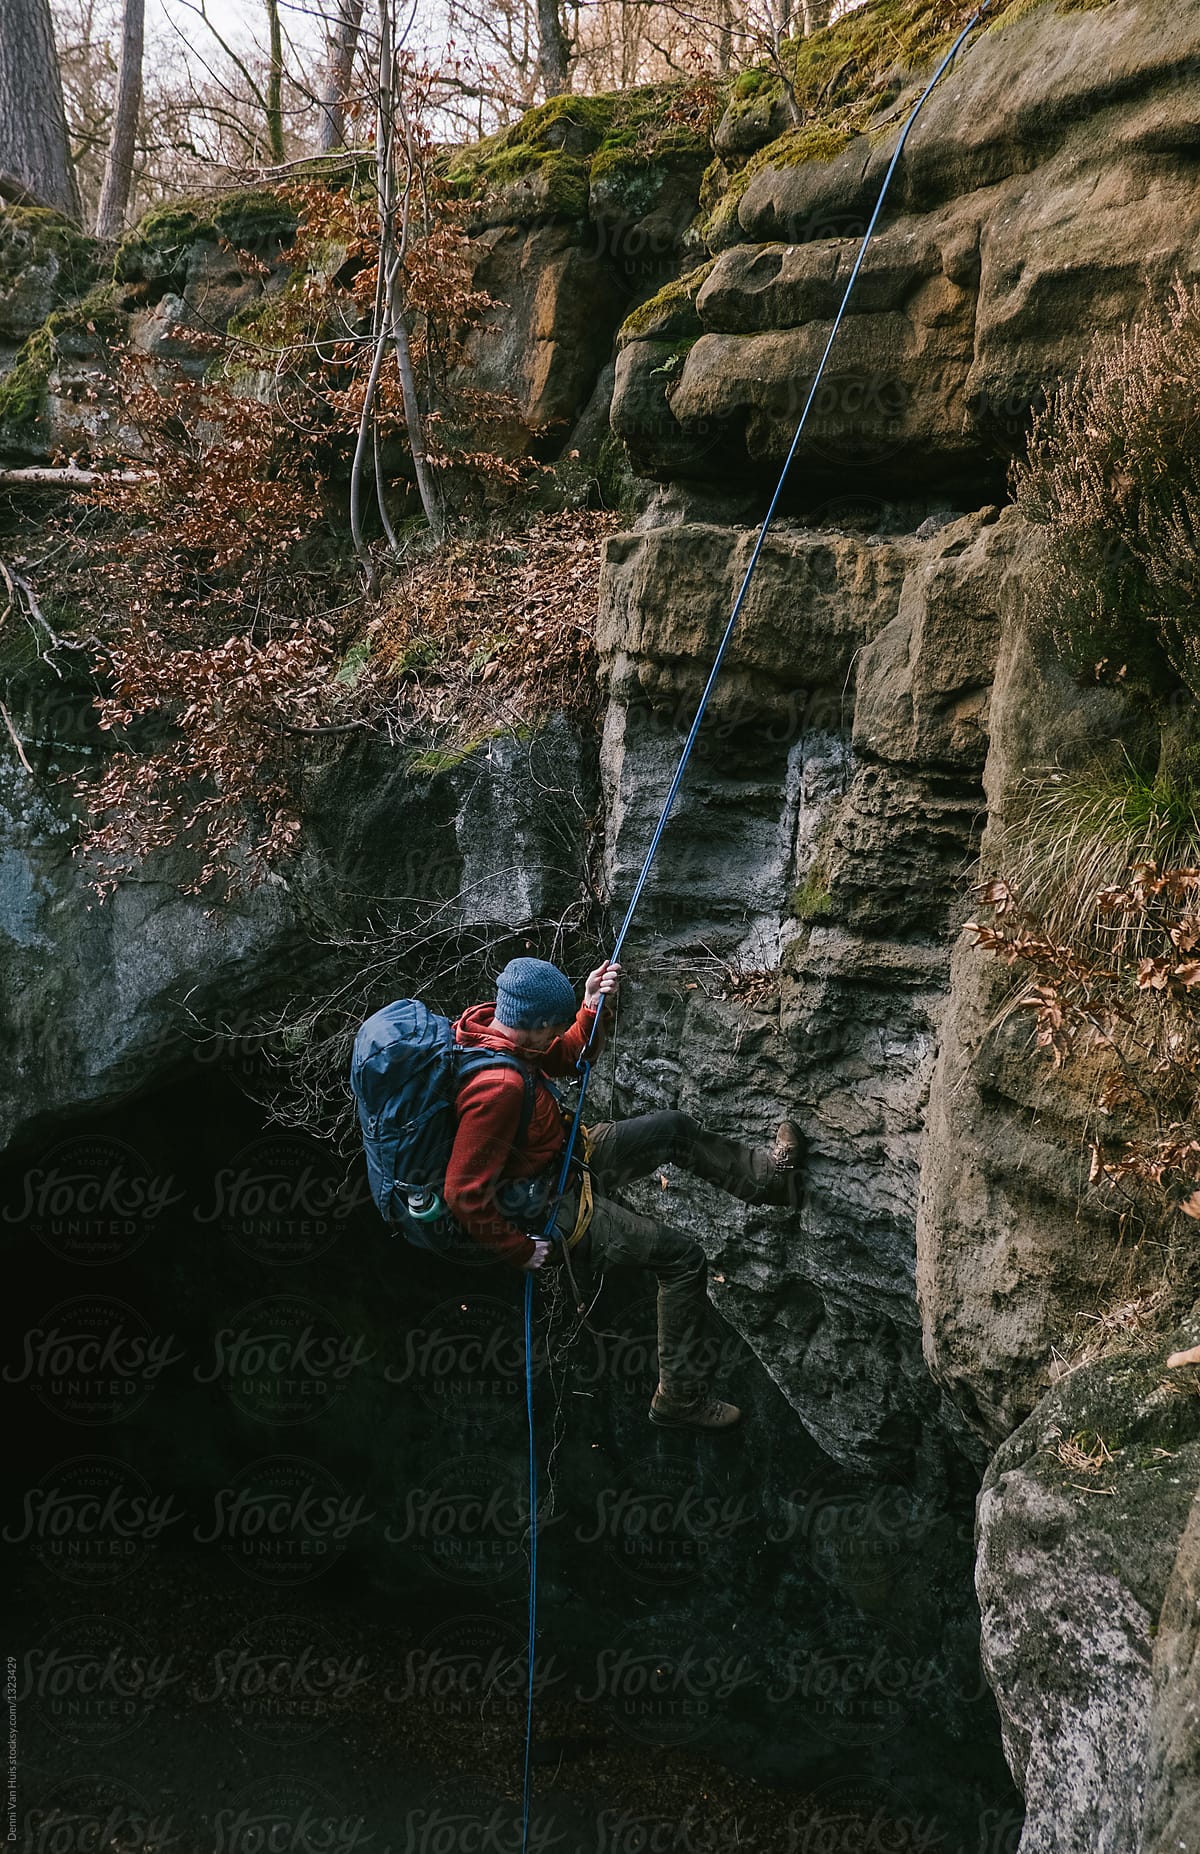 A man climbing down, a descent off a cliff.